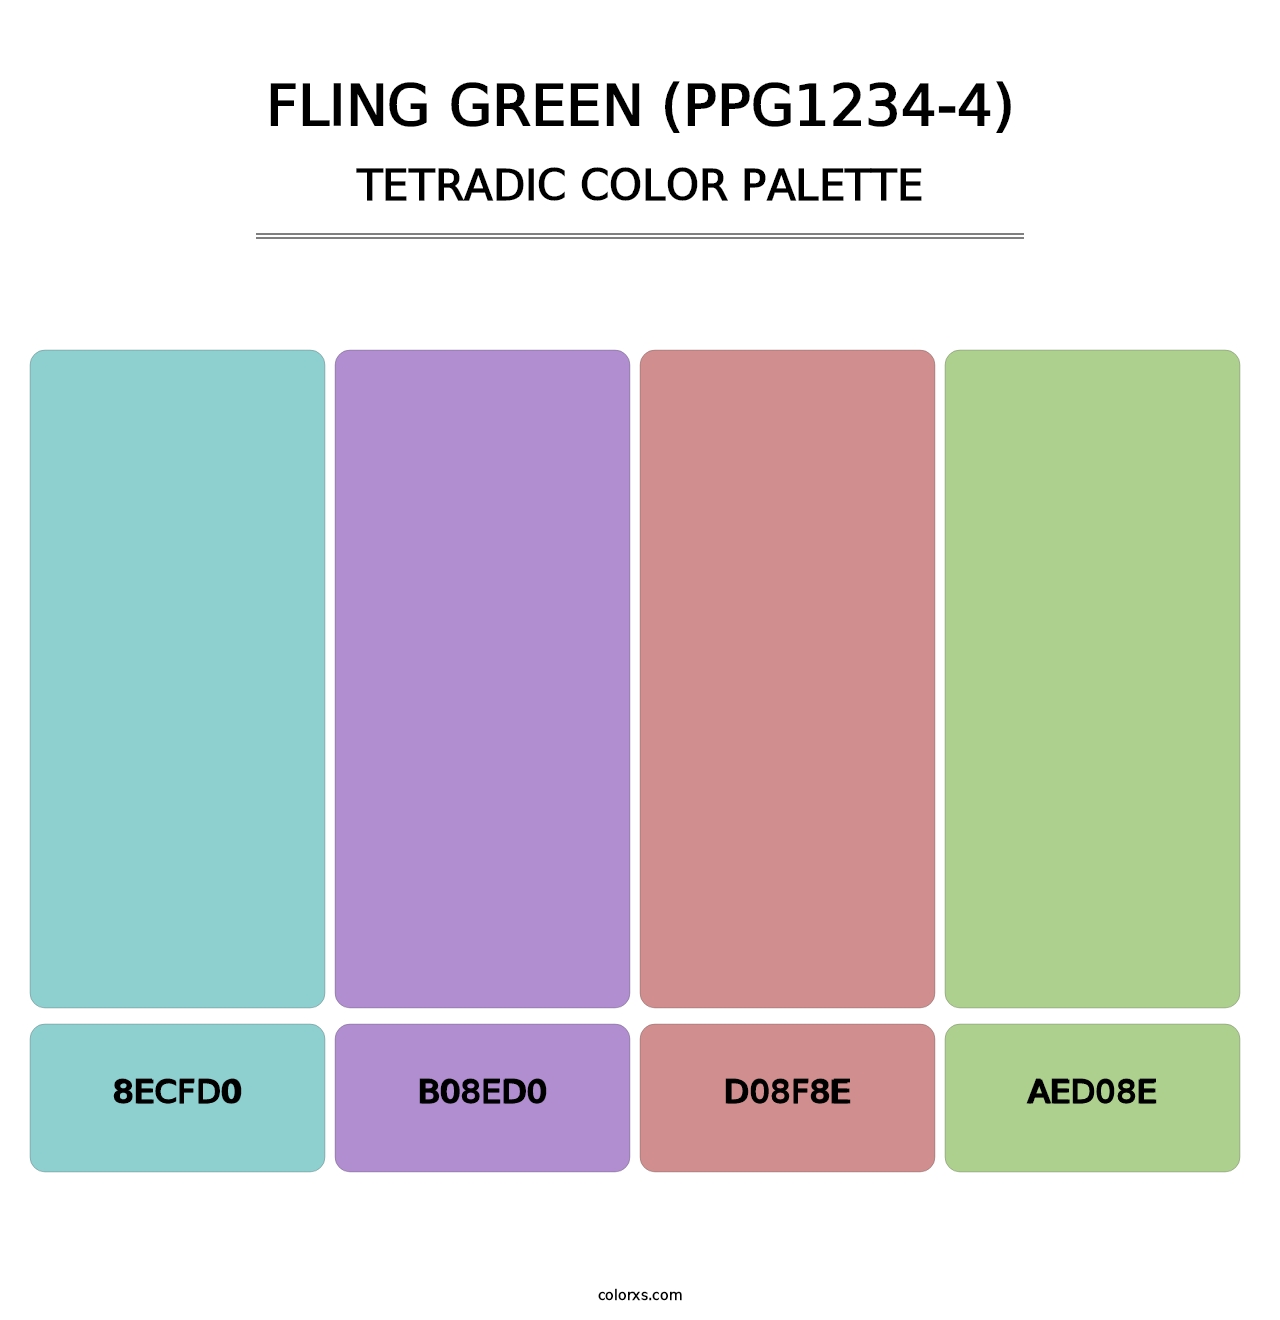 Fling Green (PPG1234-4) - Tetradic Color Palette